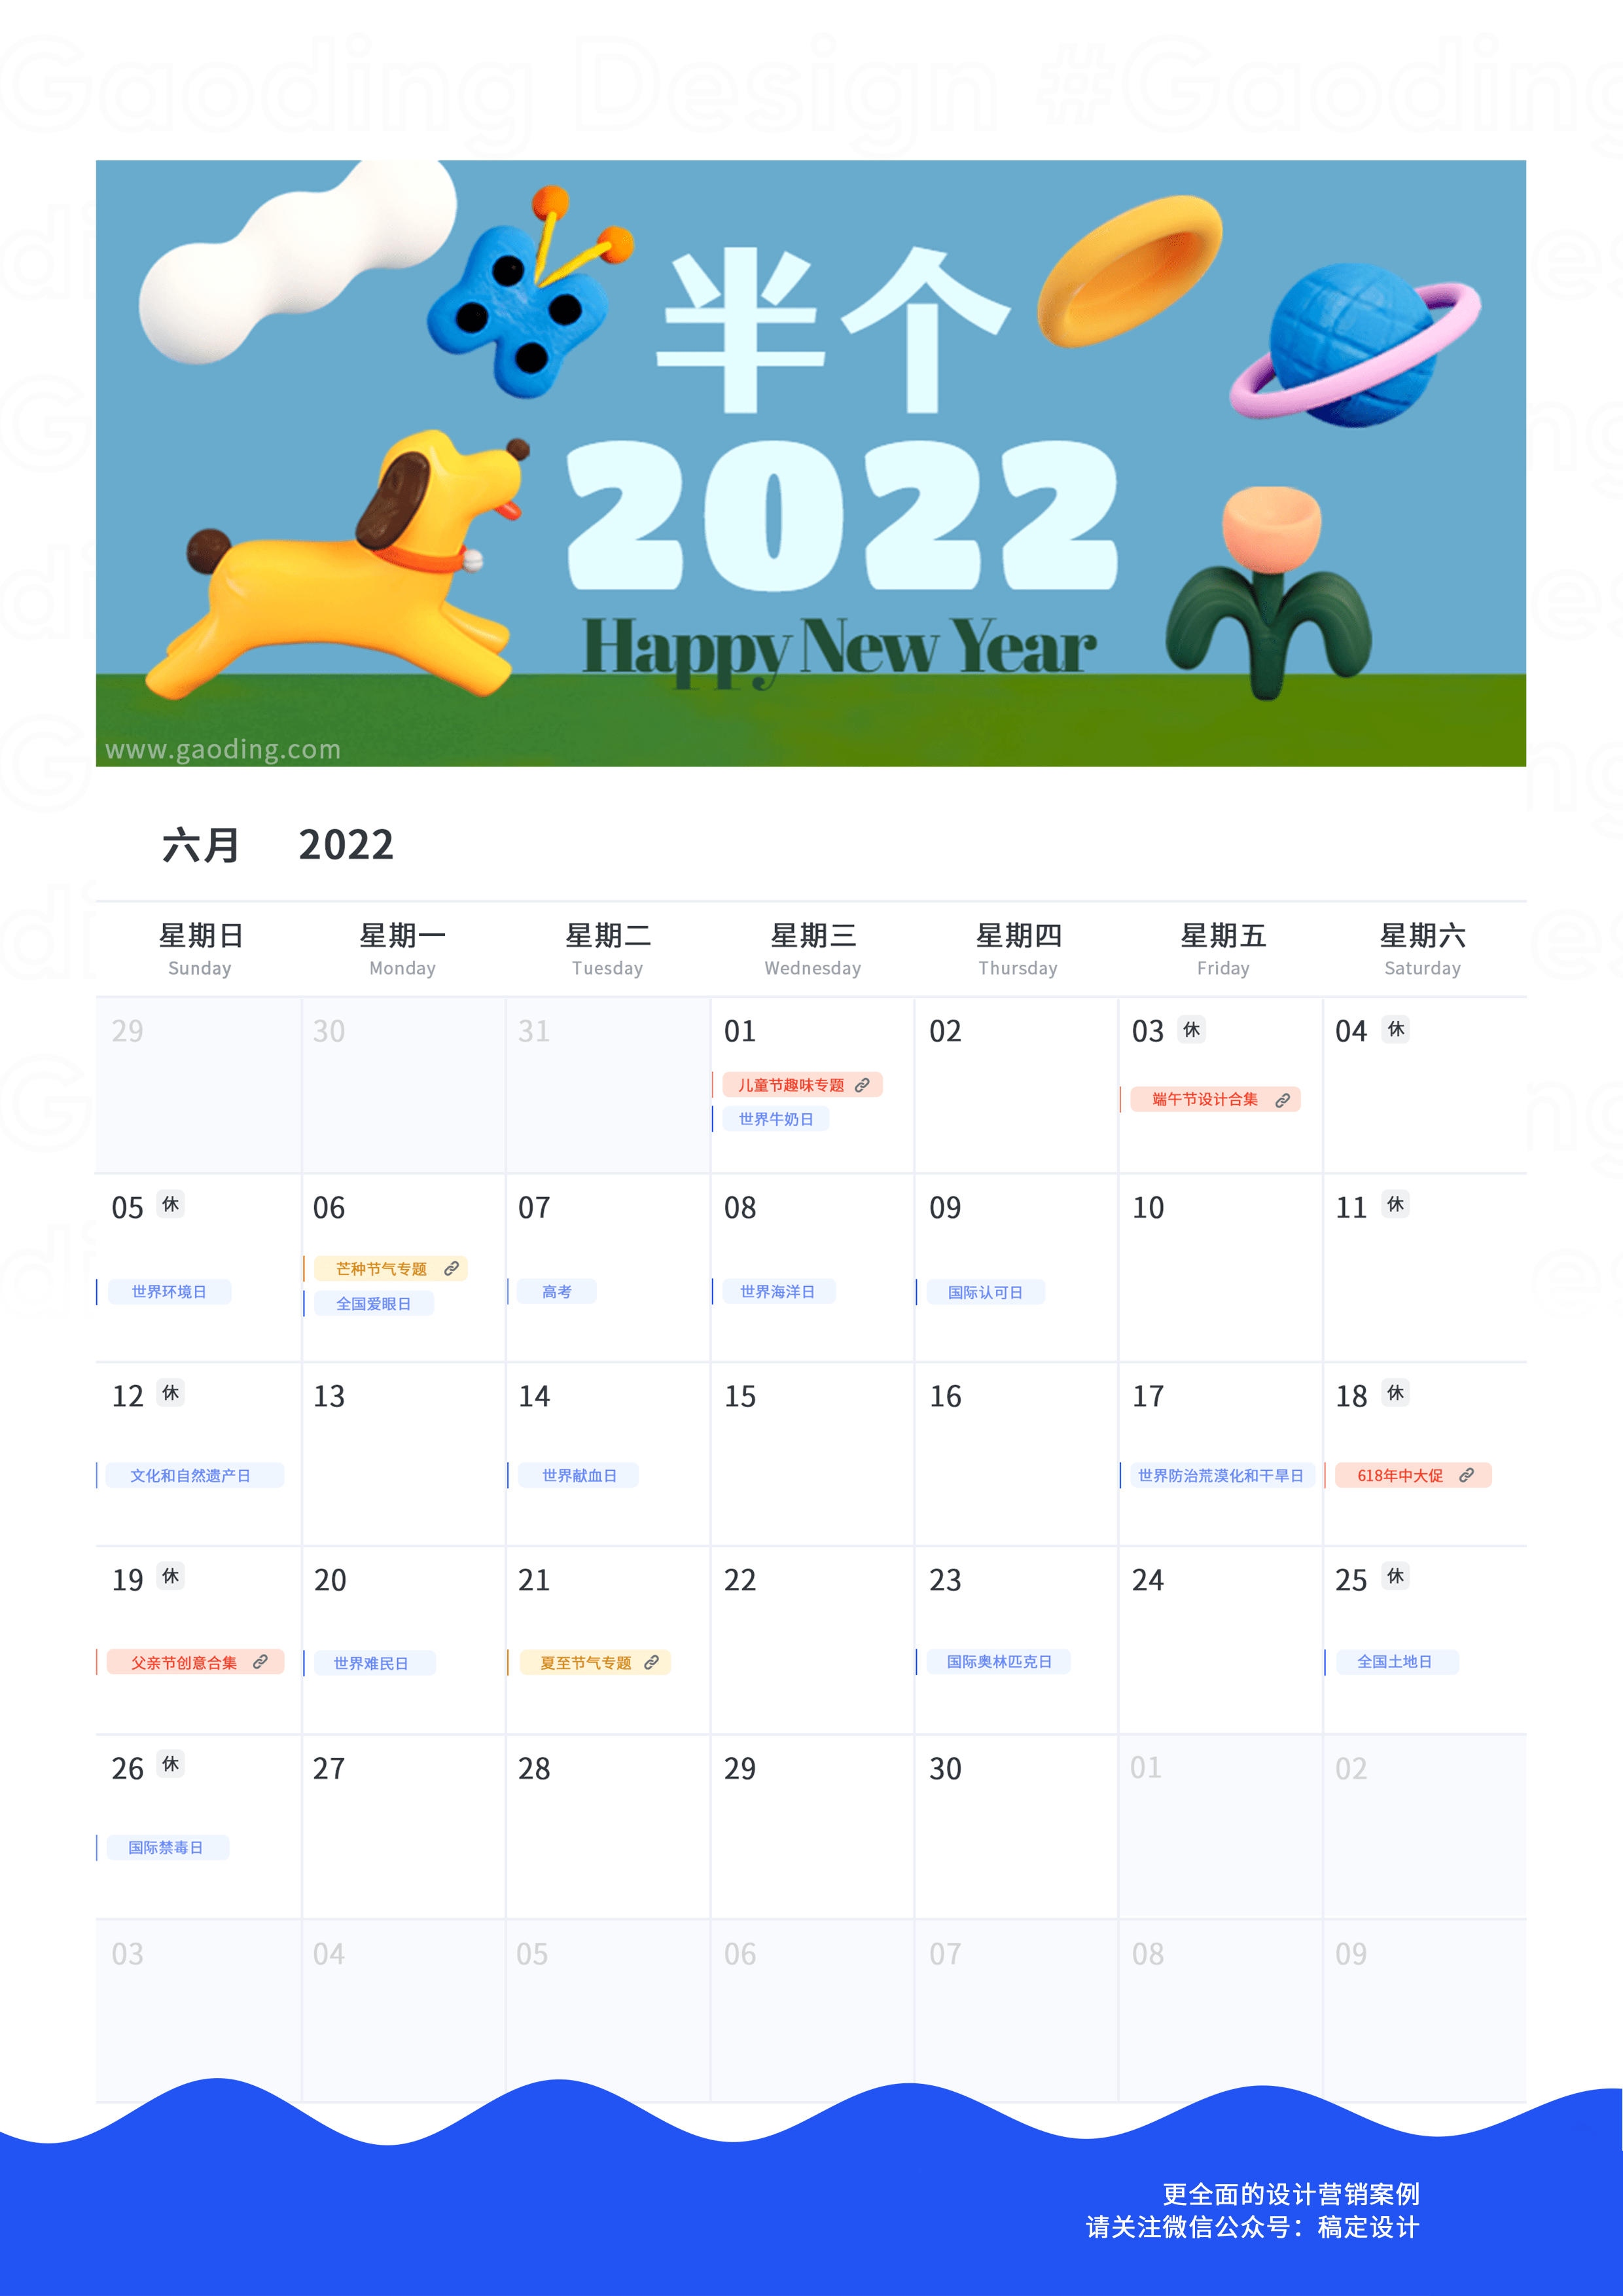 全年300借势热点2022最全营销日历完整版下载